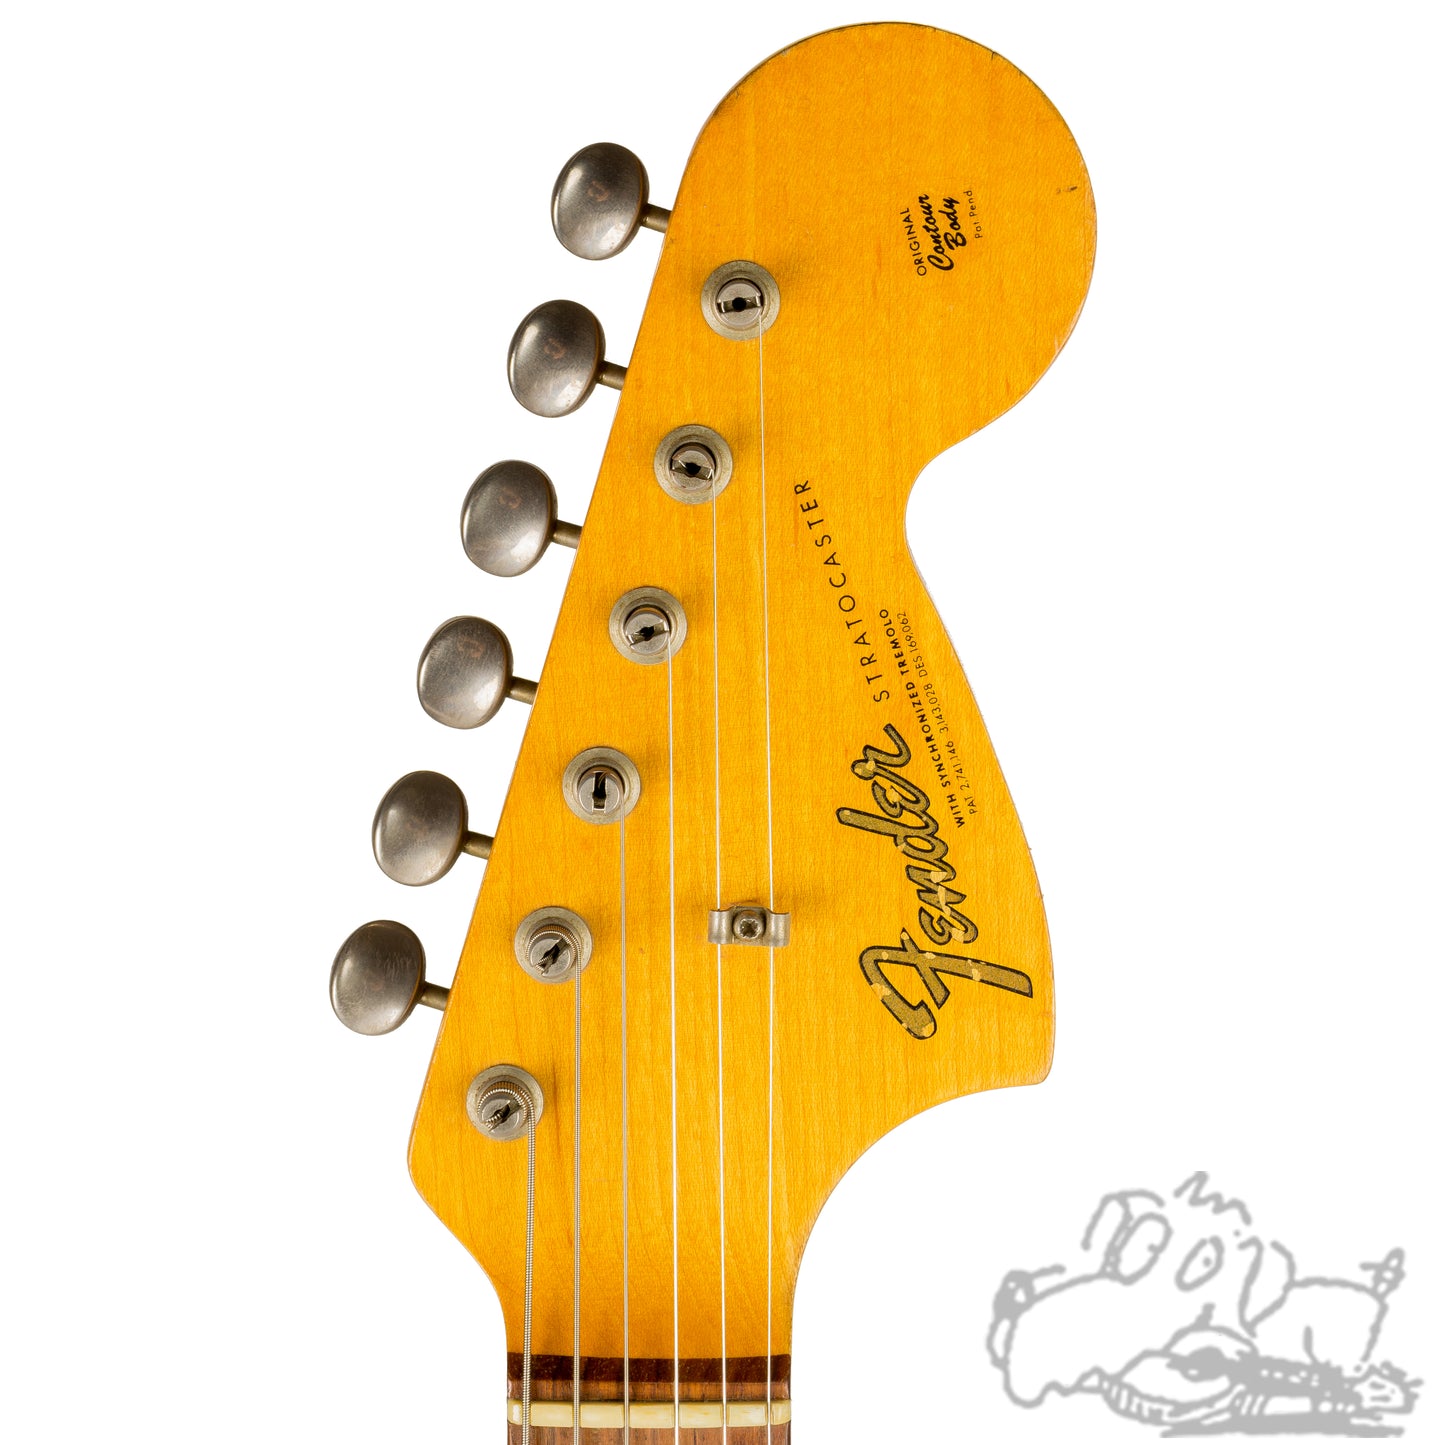 1966 Fender Stratocaster - 3 Tone Sunburst